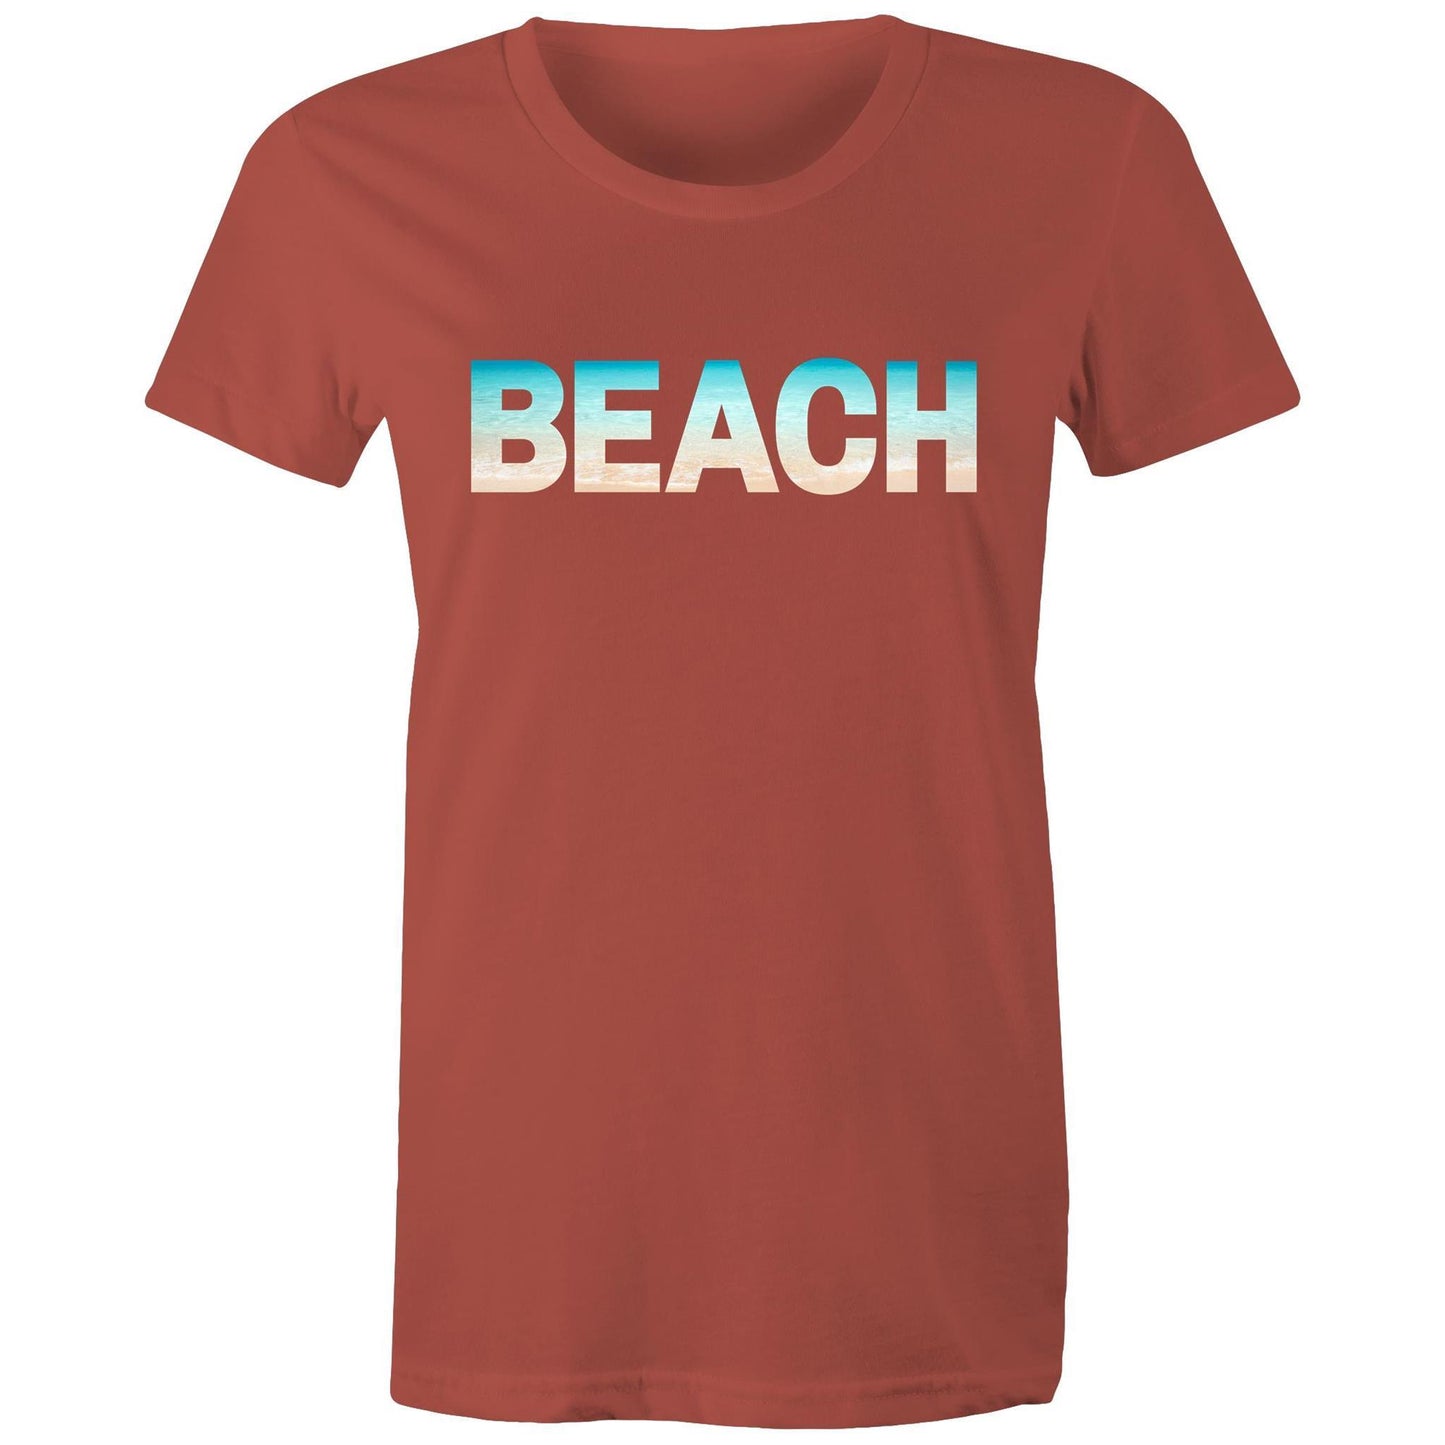 Beach - Women's T-shirt Coral Womens T-shirt Summer Womens